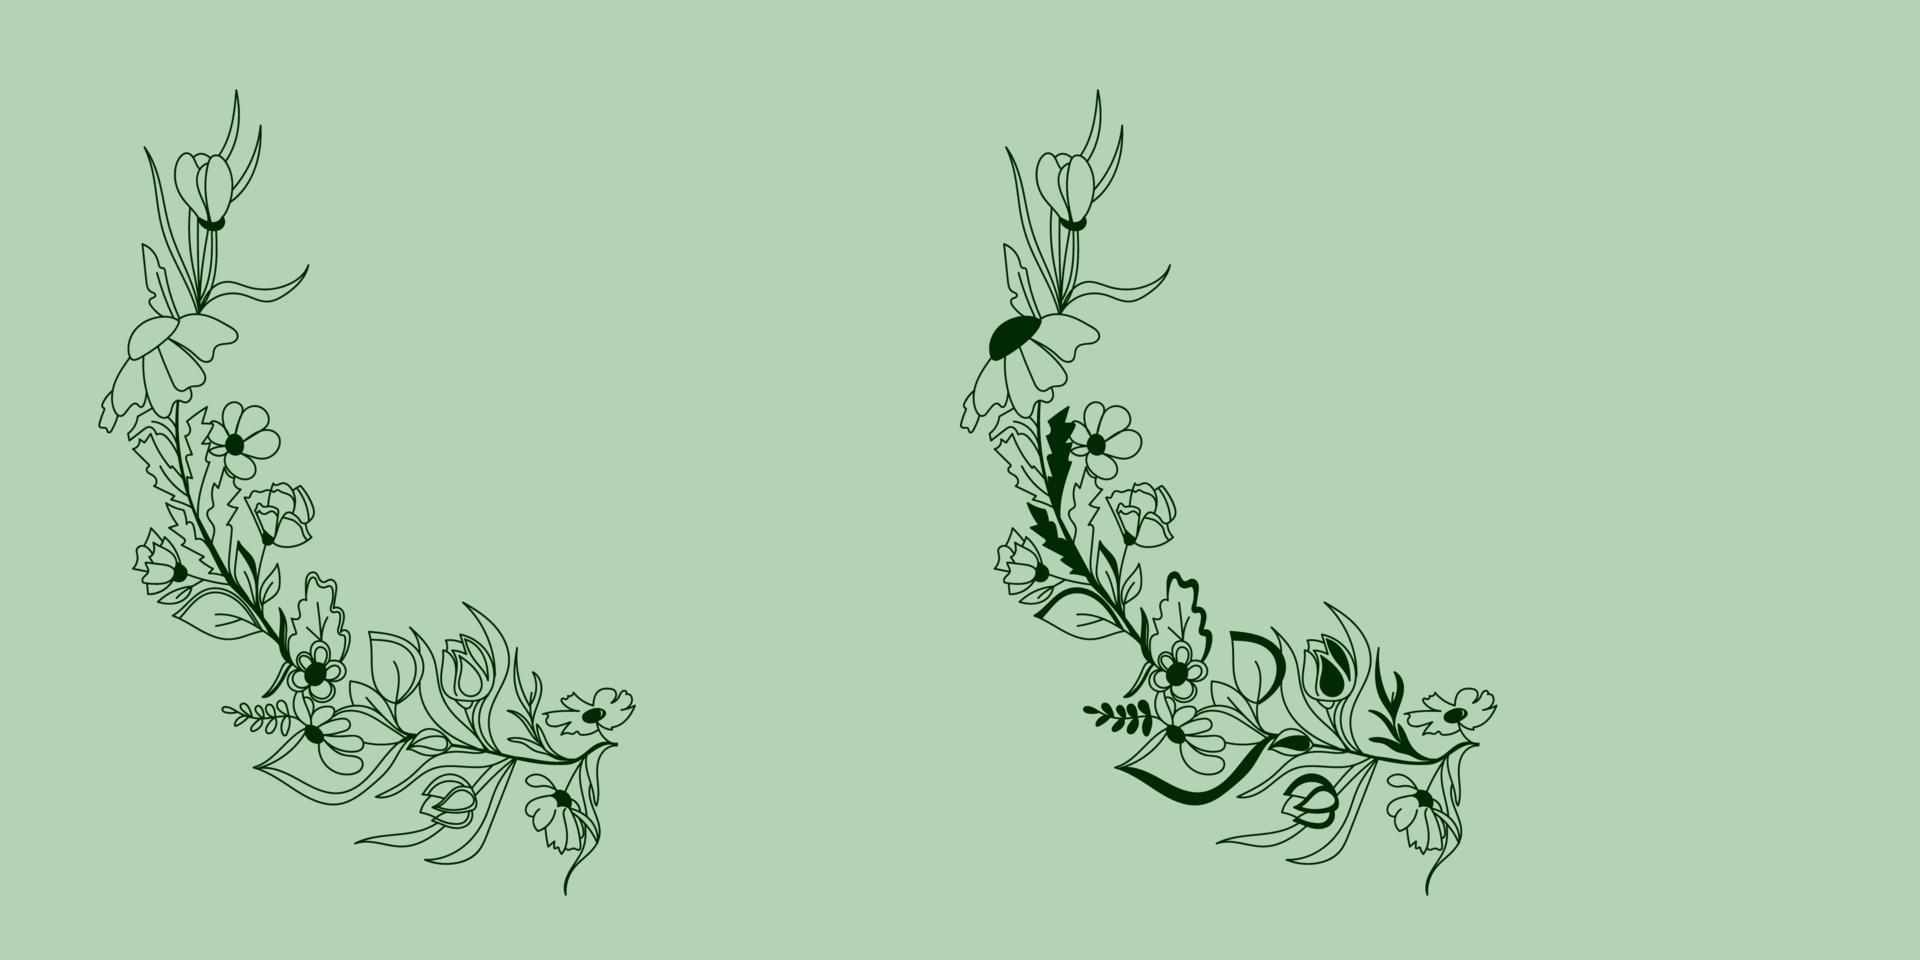 skisserat handritad blomsterkrans, gren, kvist, löv. växtbaserade botaniska naturliga element i doodle stil krans, chaplet, circlet av blommor vektor